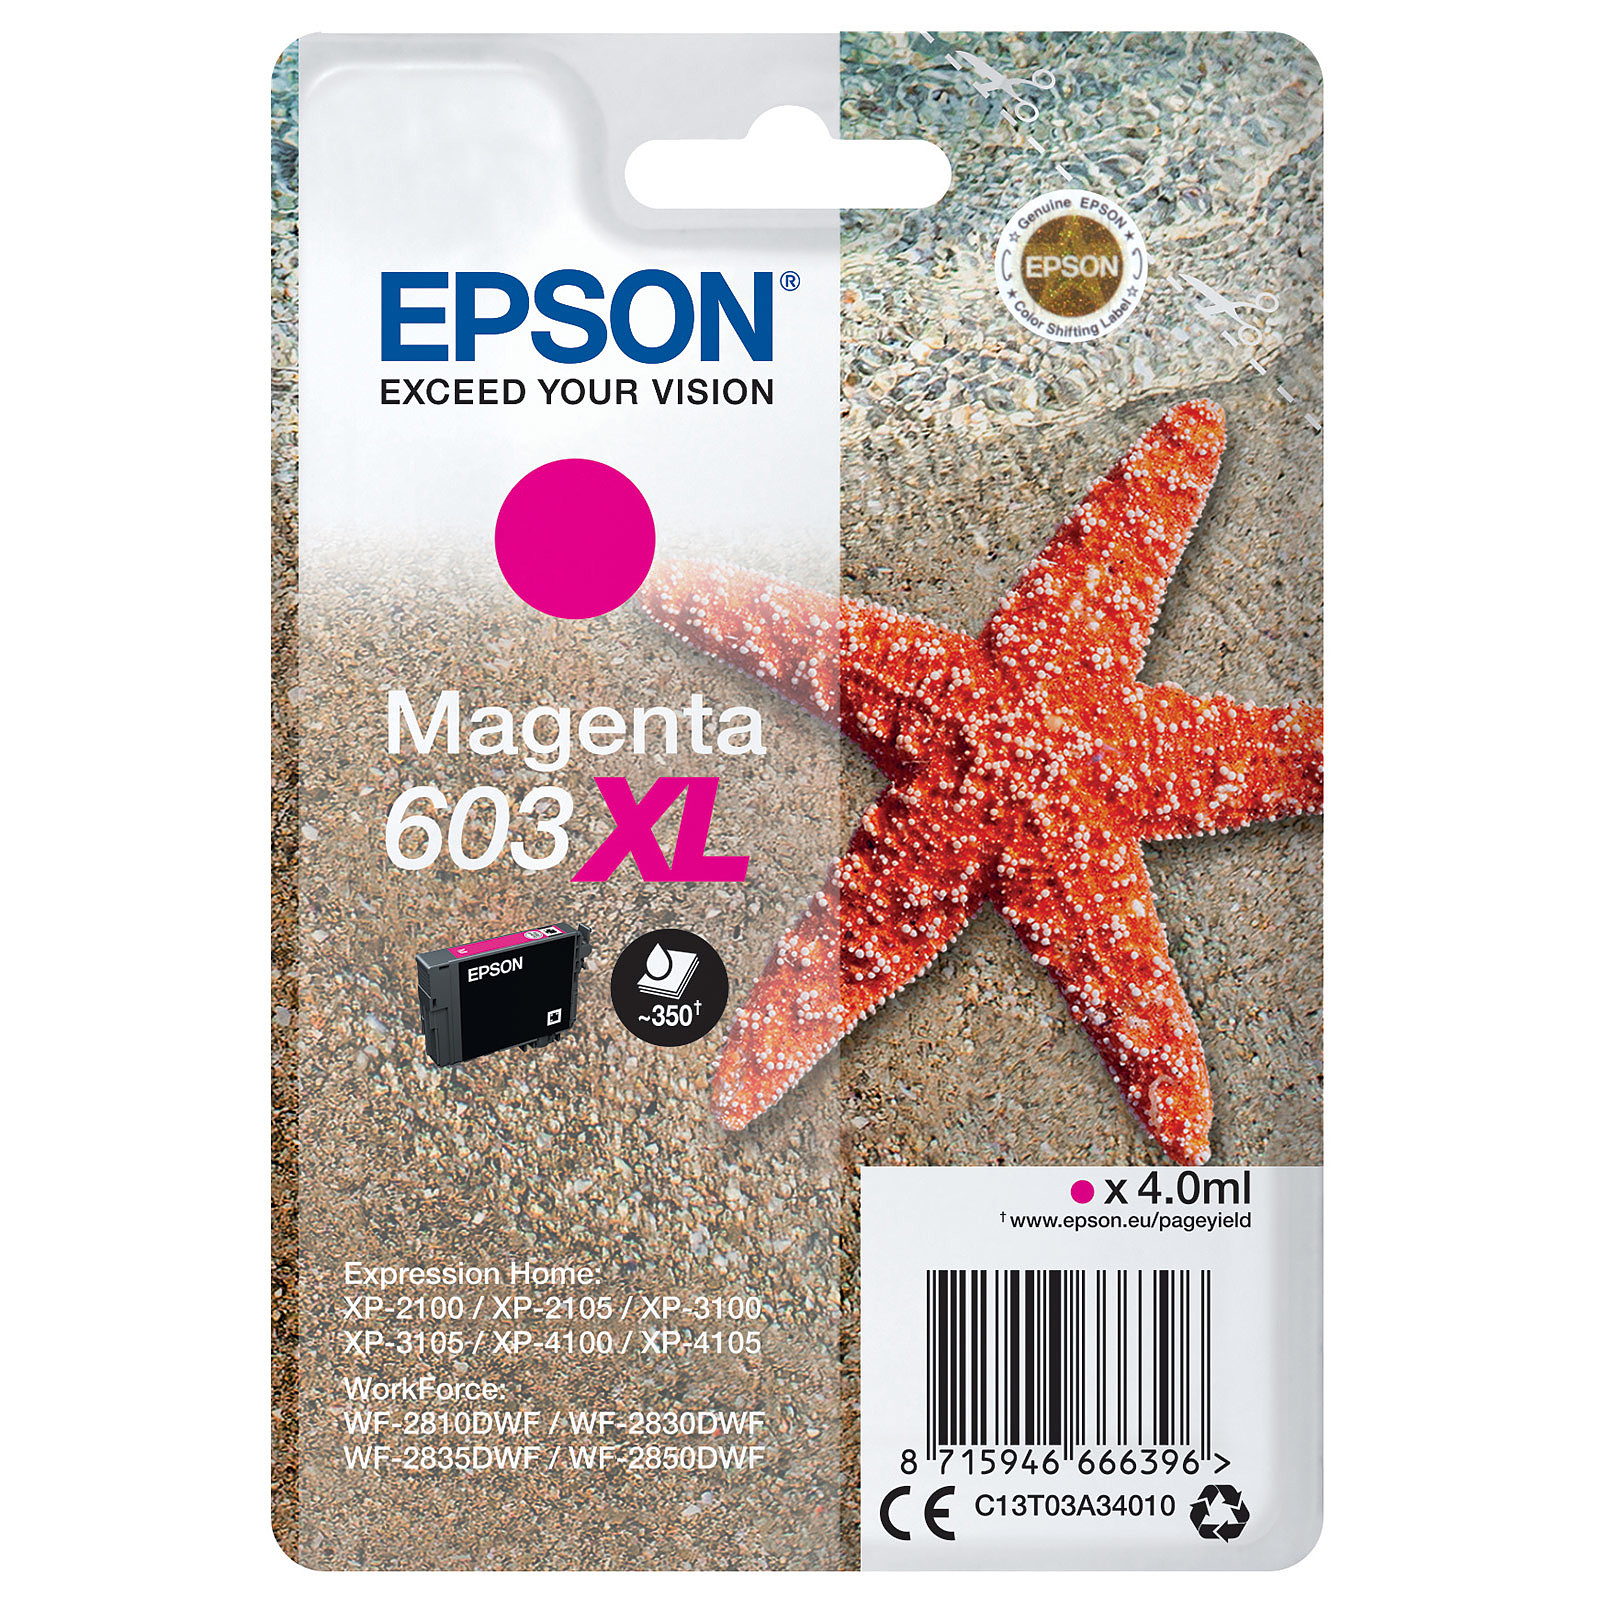 Epson Etoile de mer 603XL Magenta - Cartouche imprimante Epson